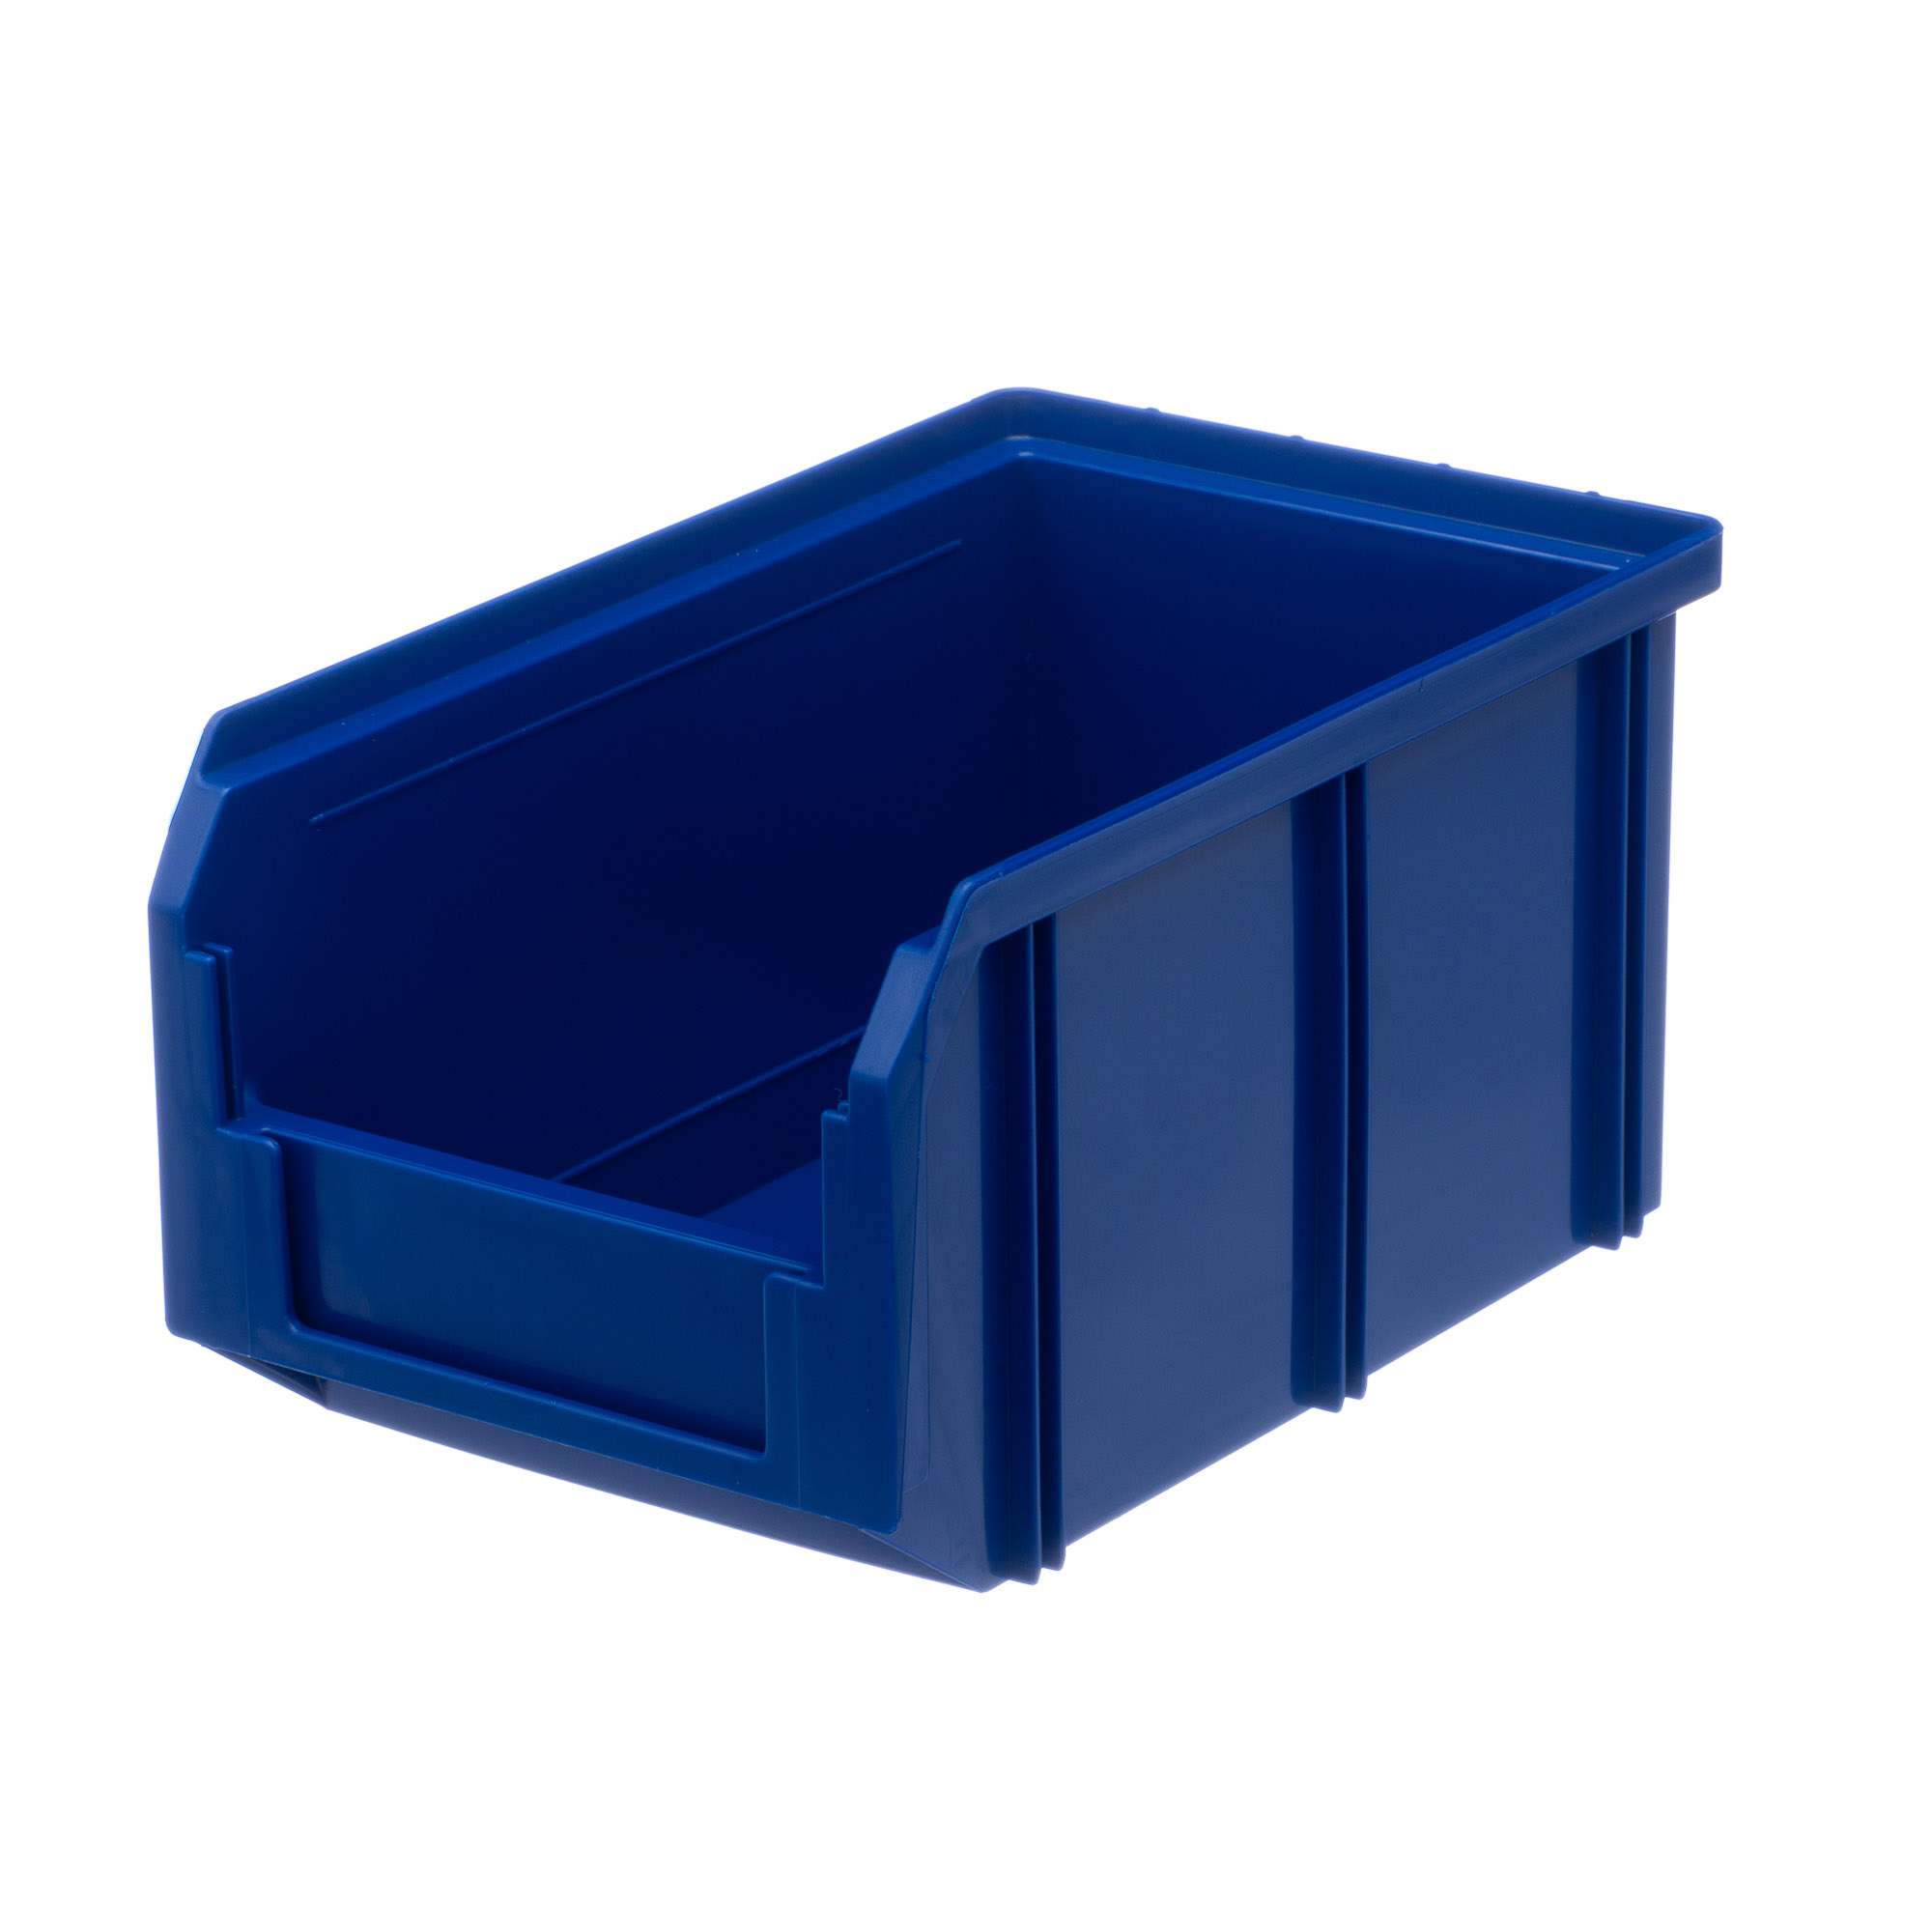 Пластиковый ящик Стелла-техник V-2-синий 234х149х120мм, 3,8 литра мельница пластиковый механизм 115 мл 45 80 гр синий